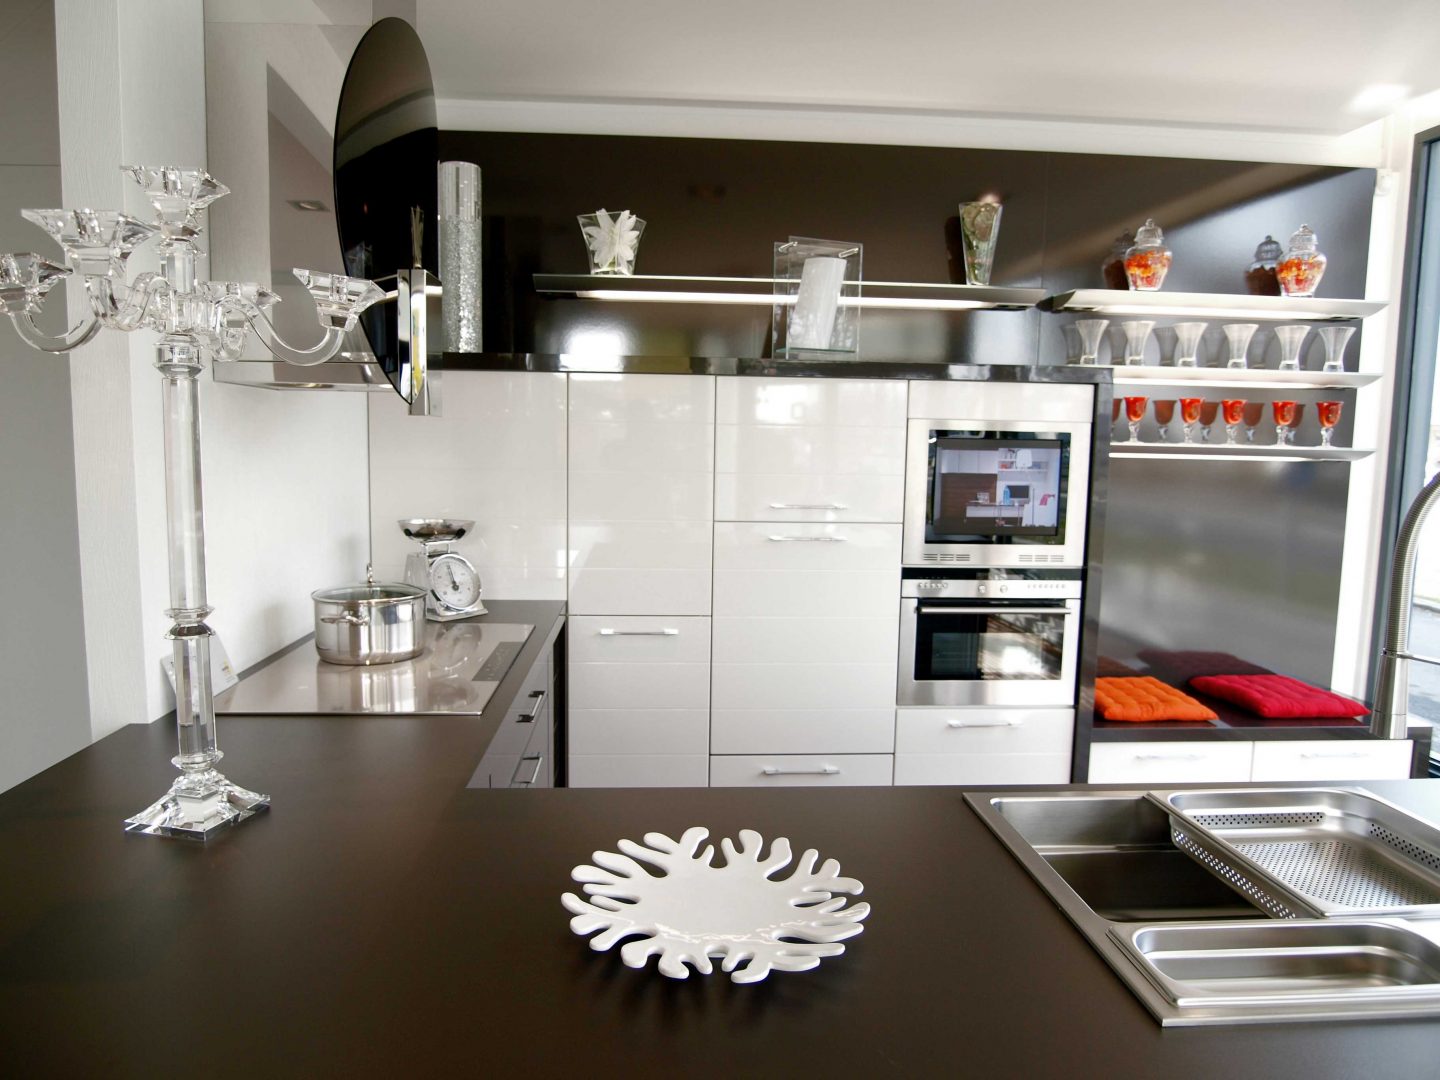 Galería de imágenes: Accesorios prácticos para la decoración de cocinas